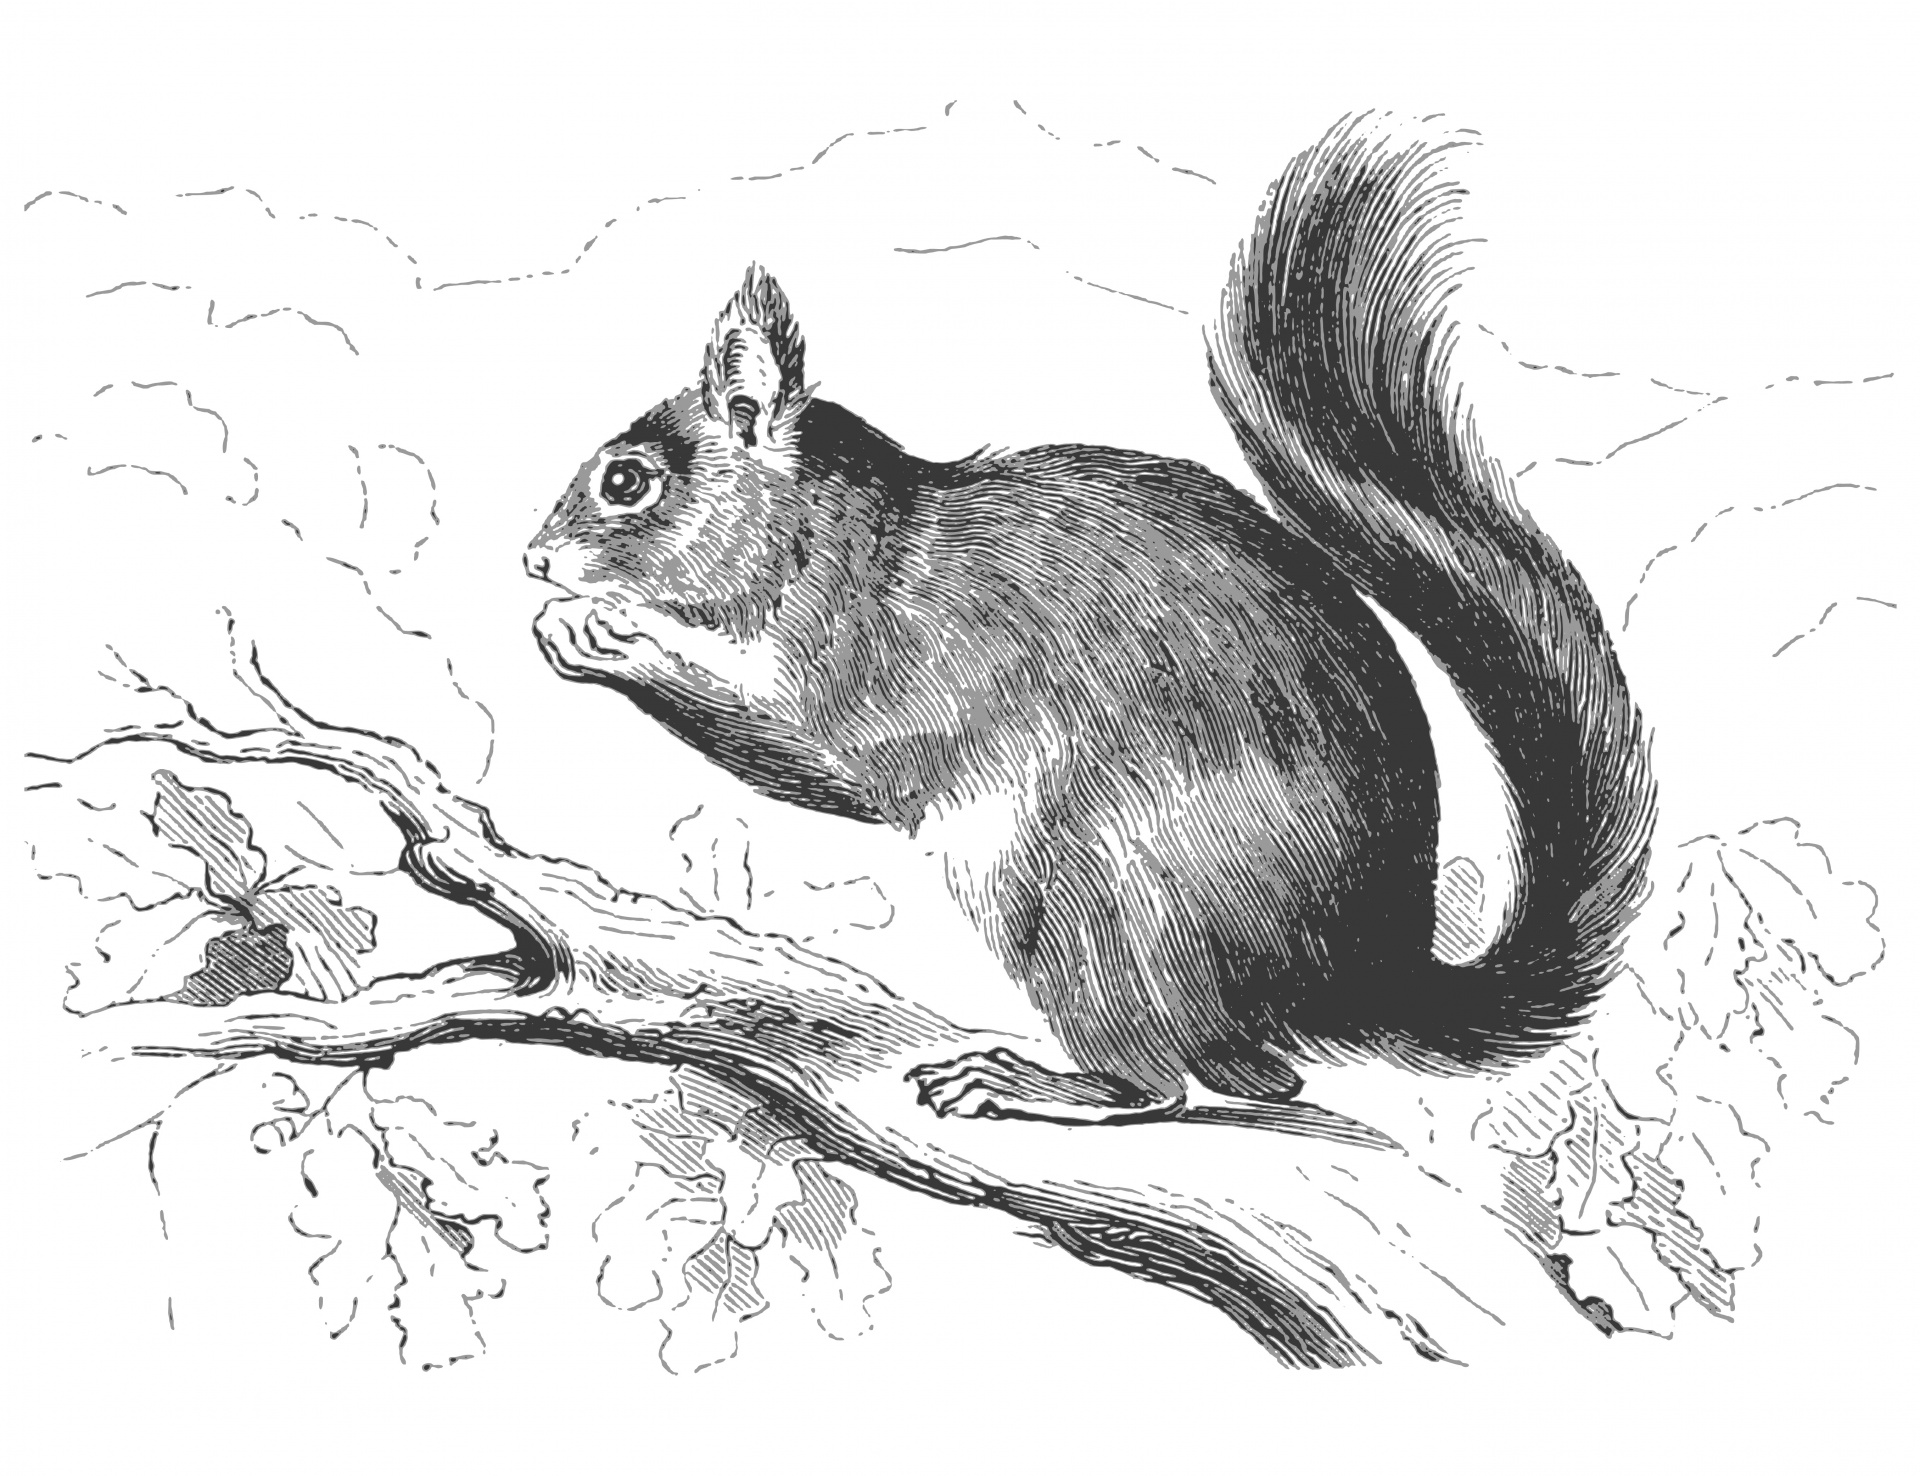 秋天森林里的小松鼠动物壁纸-壁纸图片大全